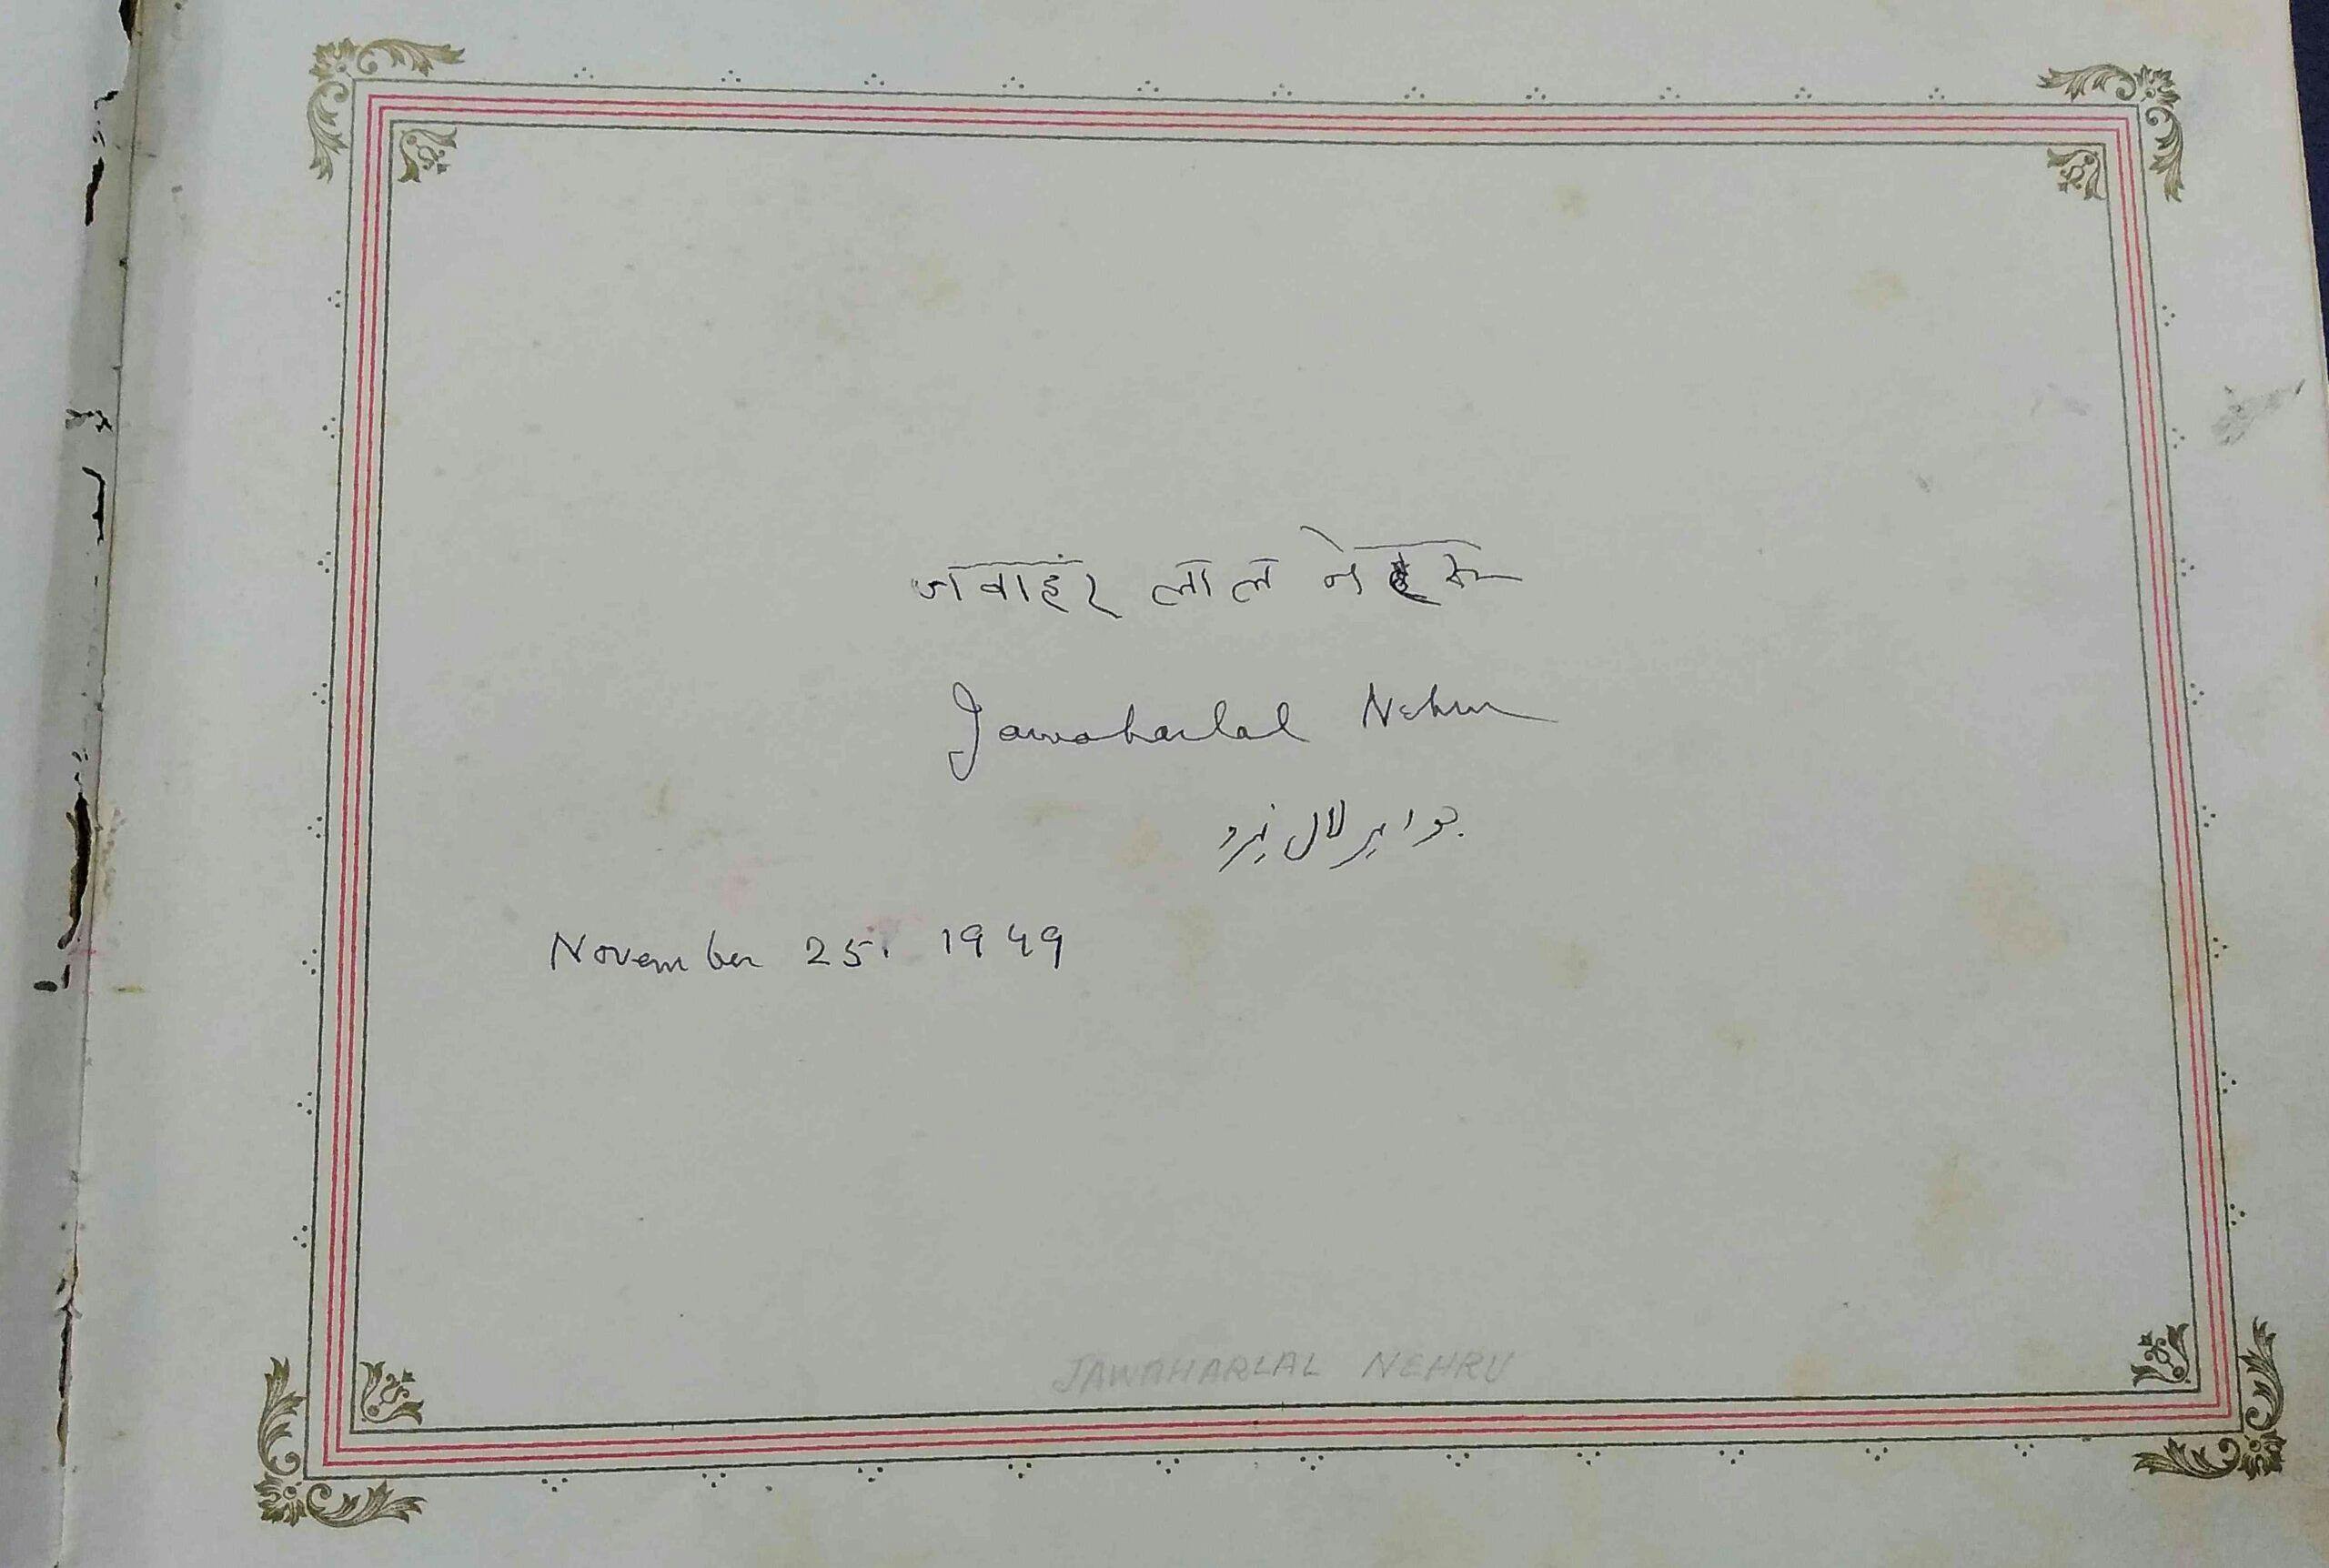 Jawaharlal Nehru's signature